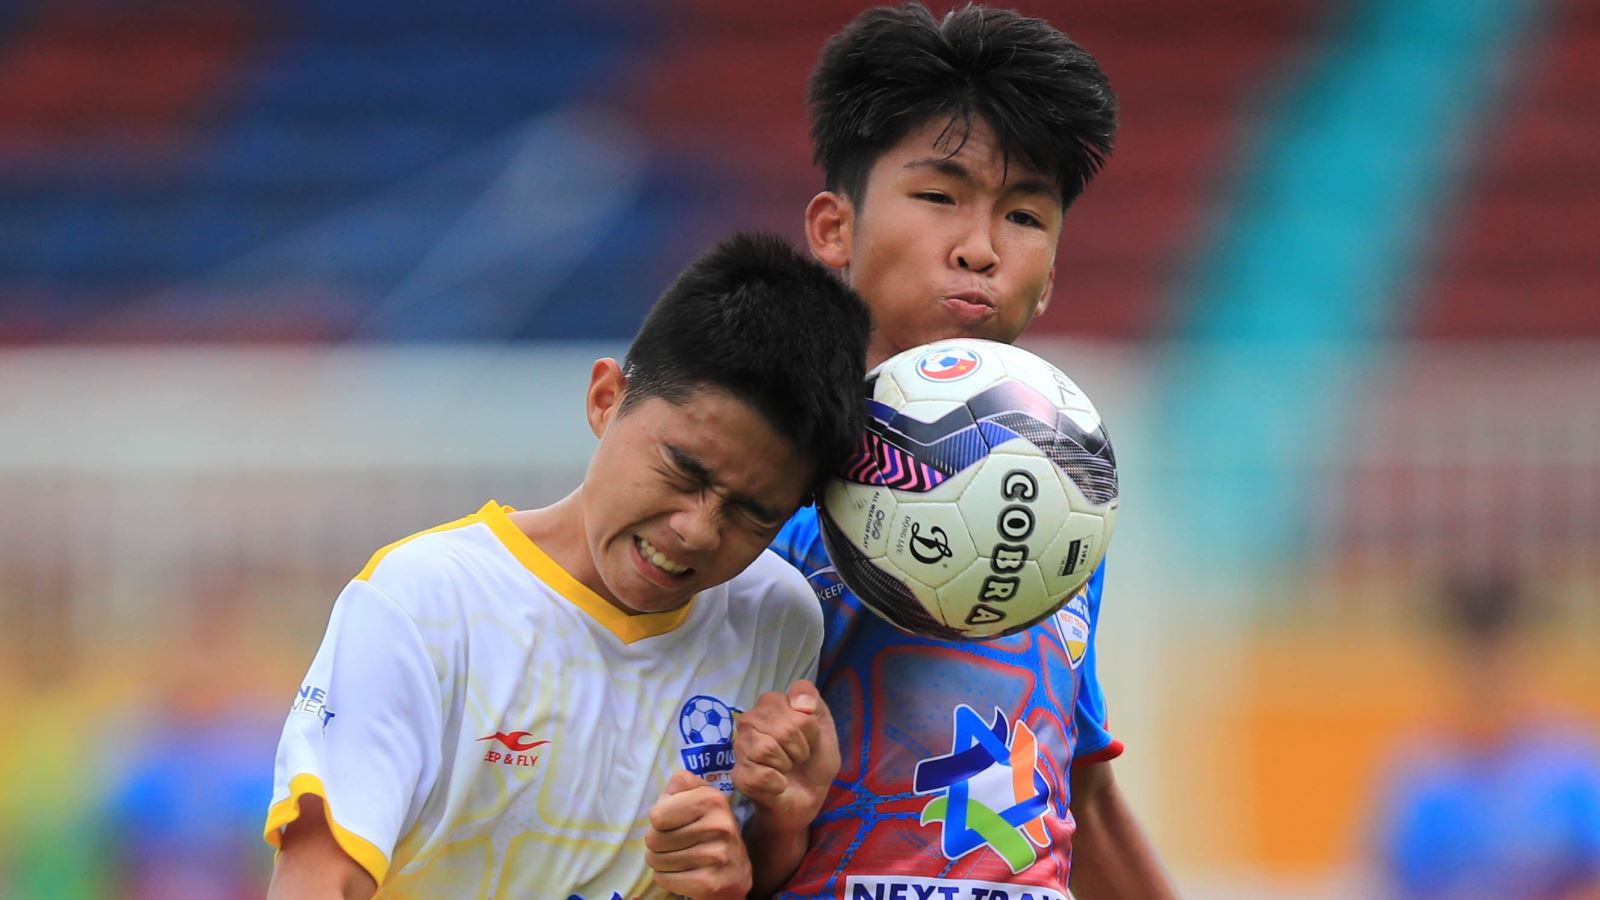 U15 Sông Lam Nghệ An và U15 Hà Nội chính thức lọt vào tứ kết U15 Quốc gia - Next Travel 2022 sớm một vòng đấu